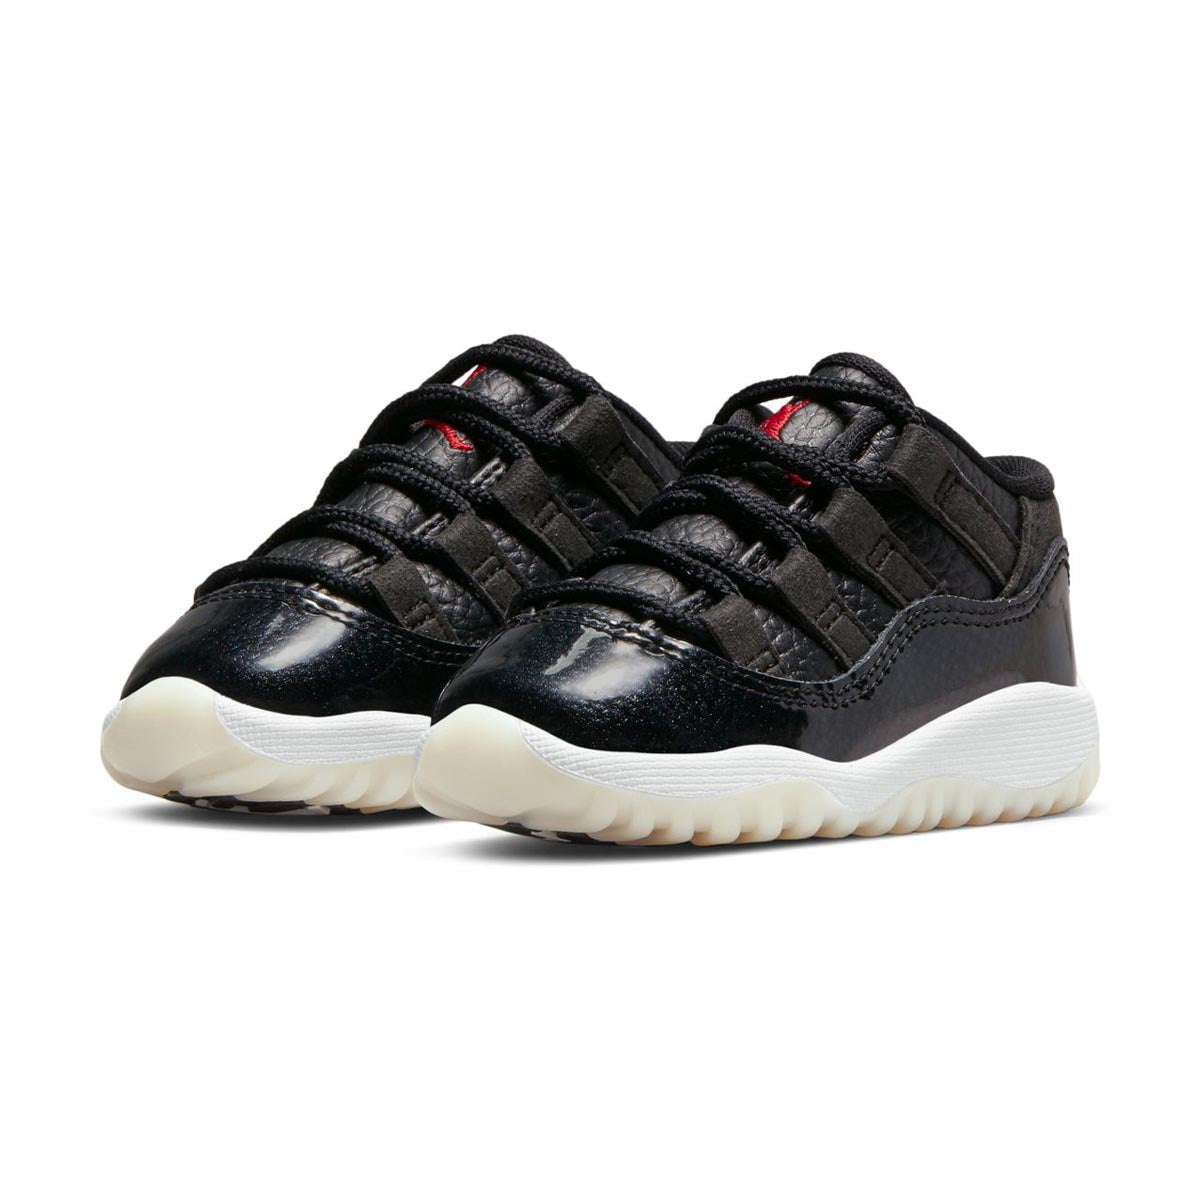 Air Jordan 11 Retro Low Baby/Toddler Shoes